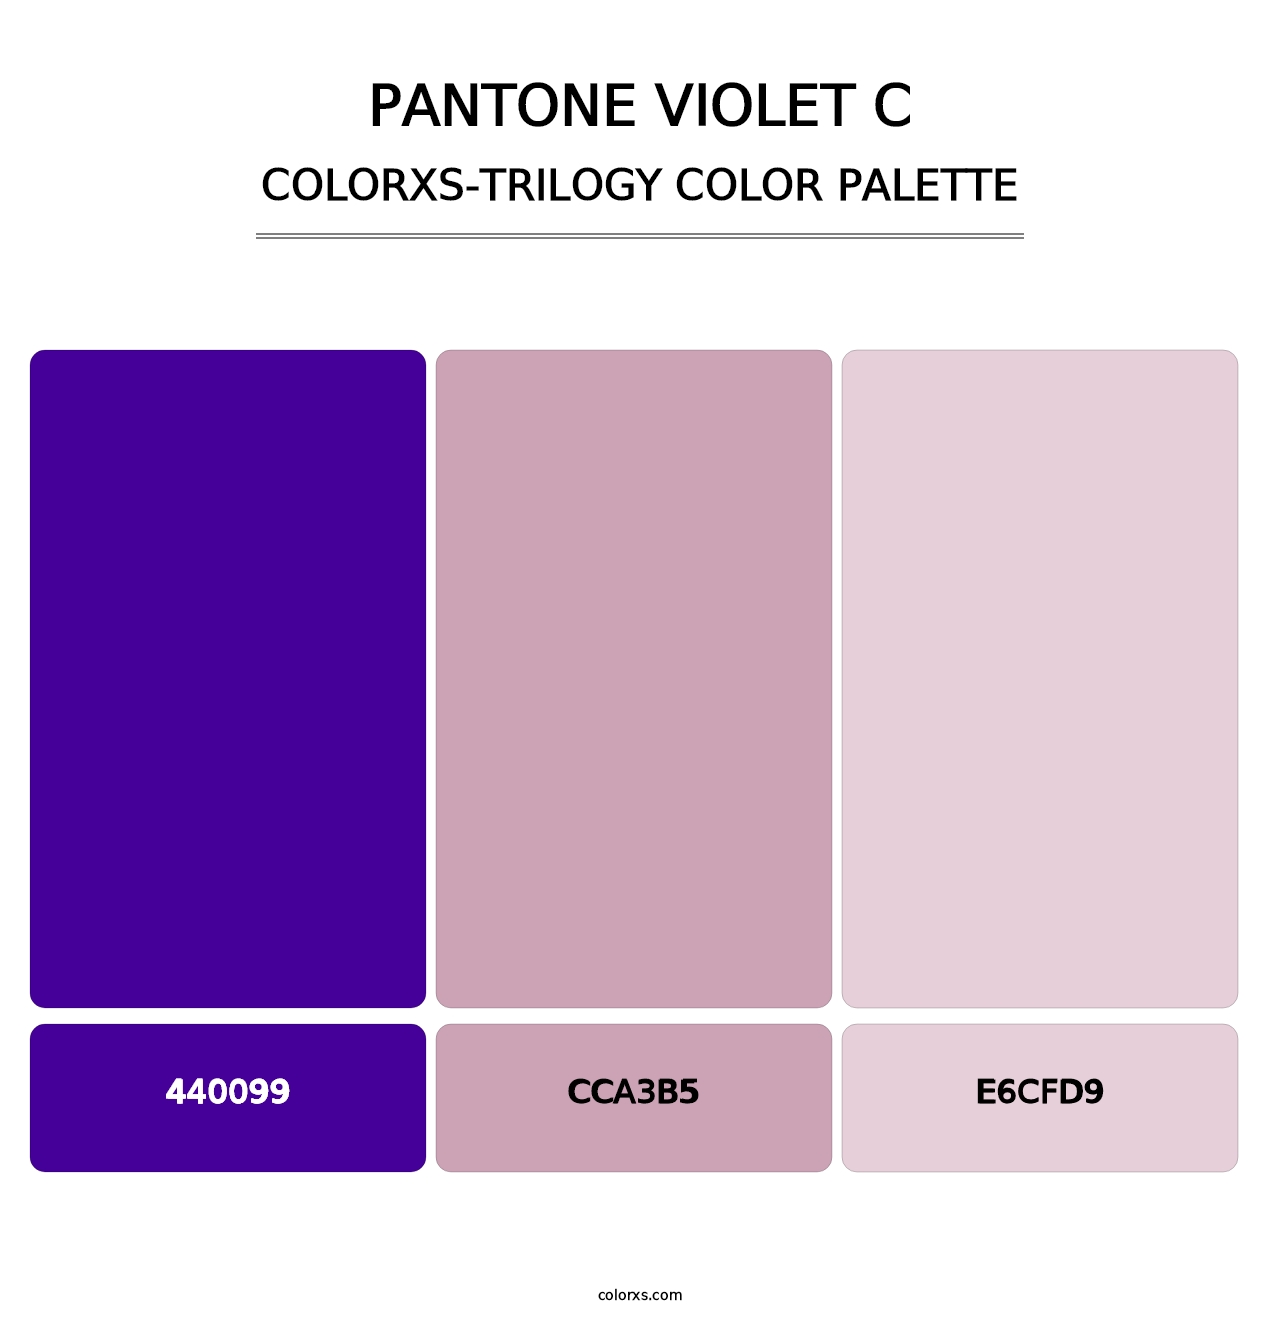 PANTONE Violet C - Colorxs Trilogy Palette